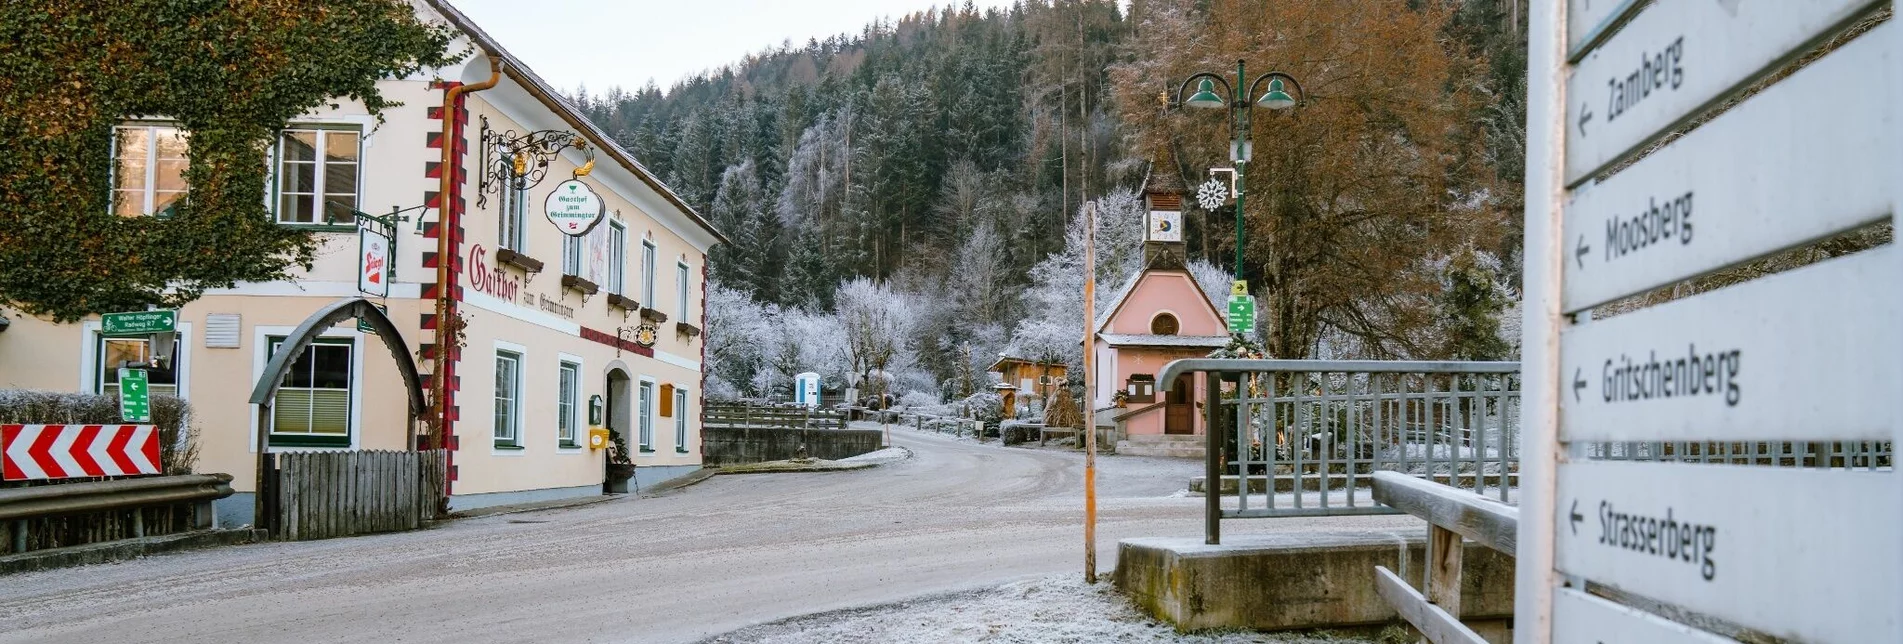 Winterwandern Winterwandern - Große Niederöblarner Ortsrunde - Touren-Impression #1 | © Erlebnisregion Schladming-Dachstein